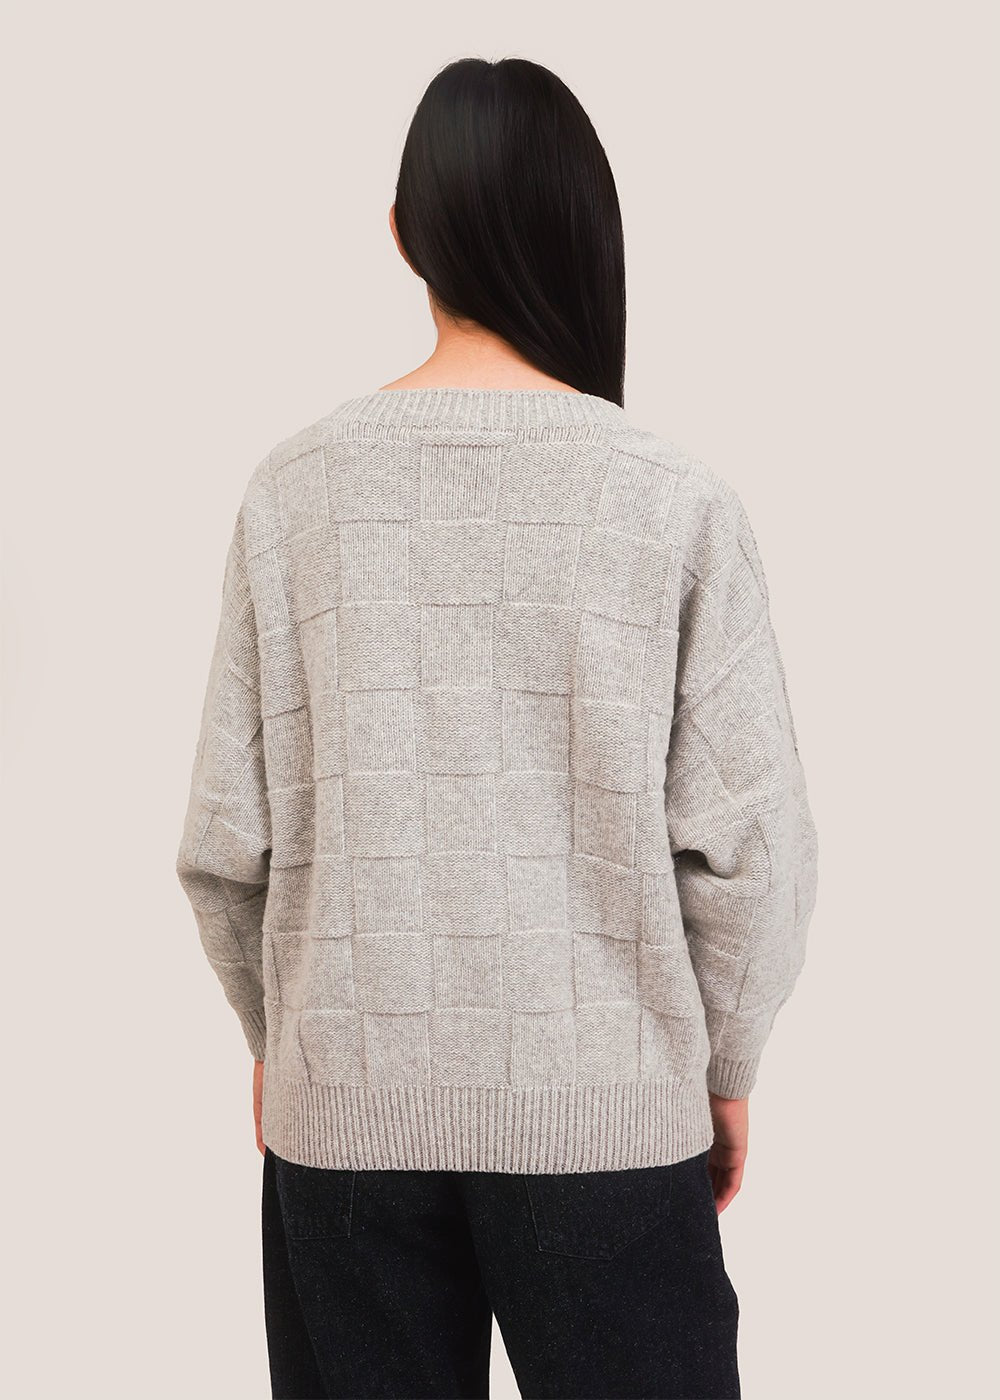 Baserange Grey Melange Ulus Sweater - New Classics Studios Sustainable Ethical Fashion Canada